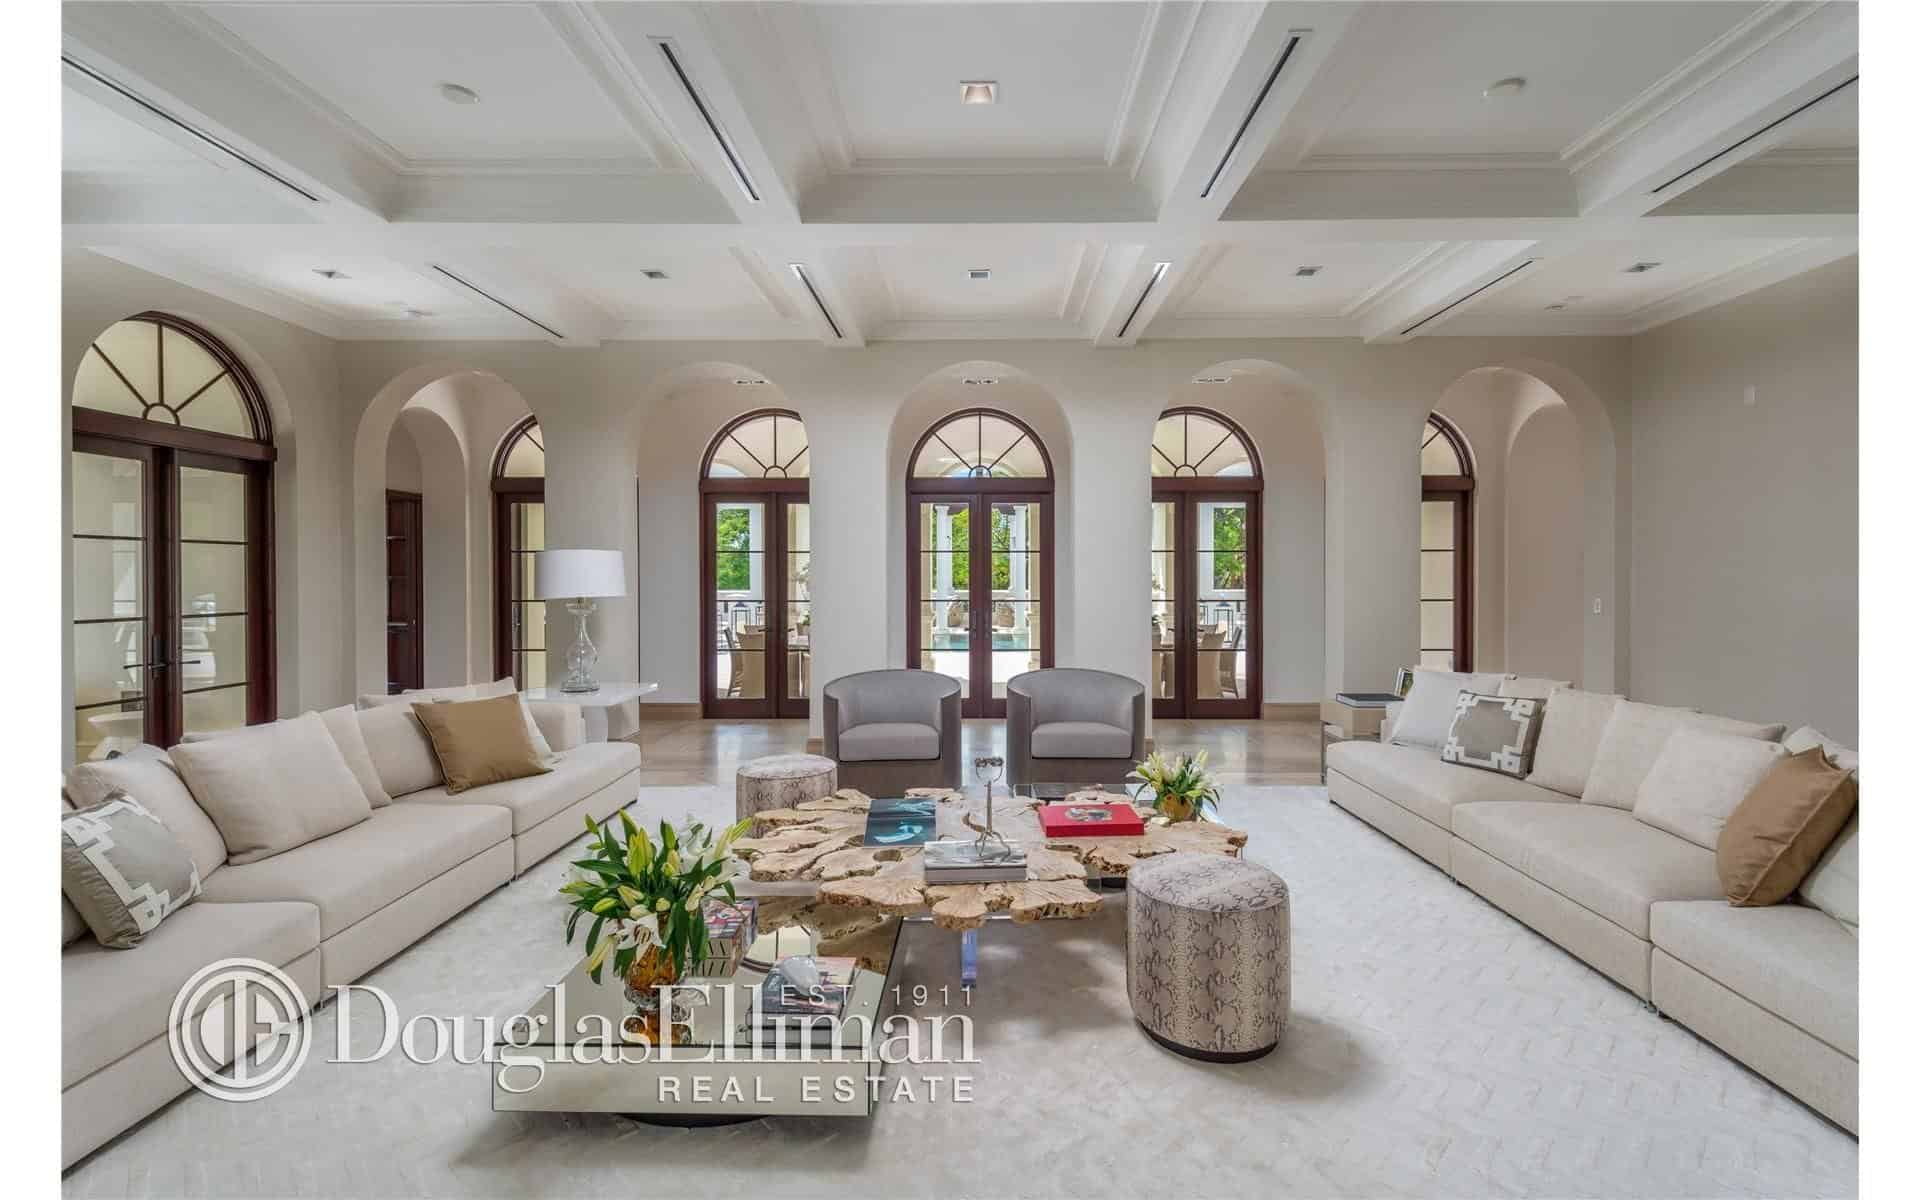 另一个客厅拥有一个巨大的空间和地毯地板，以及舒适的长对沙发和格子白色天花板。